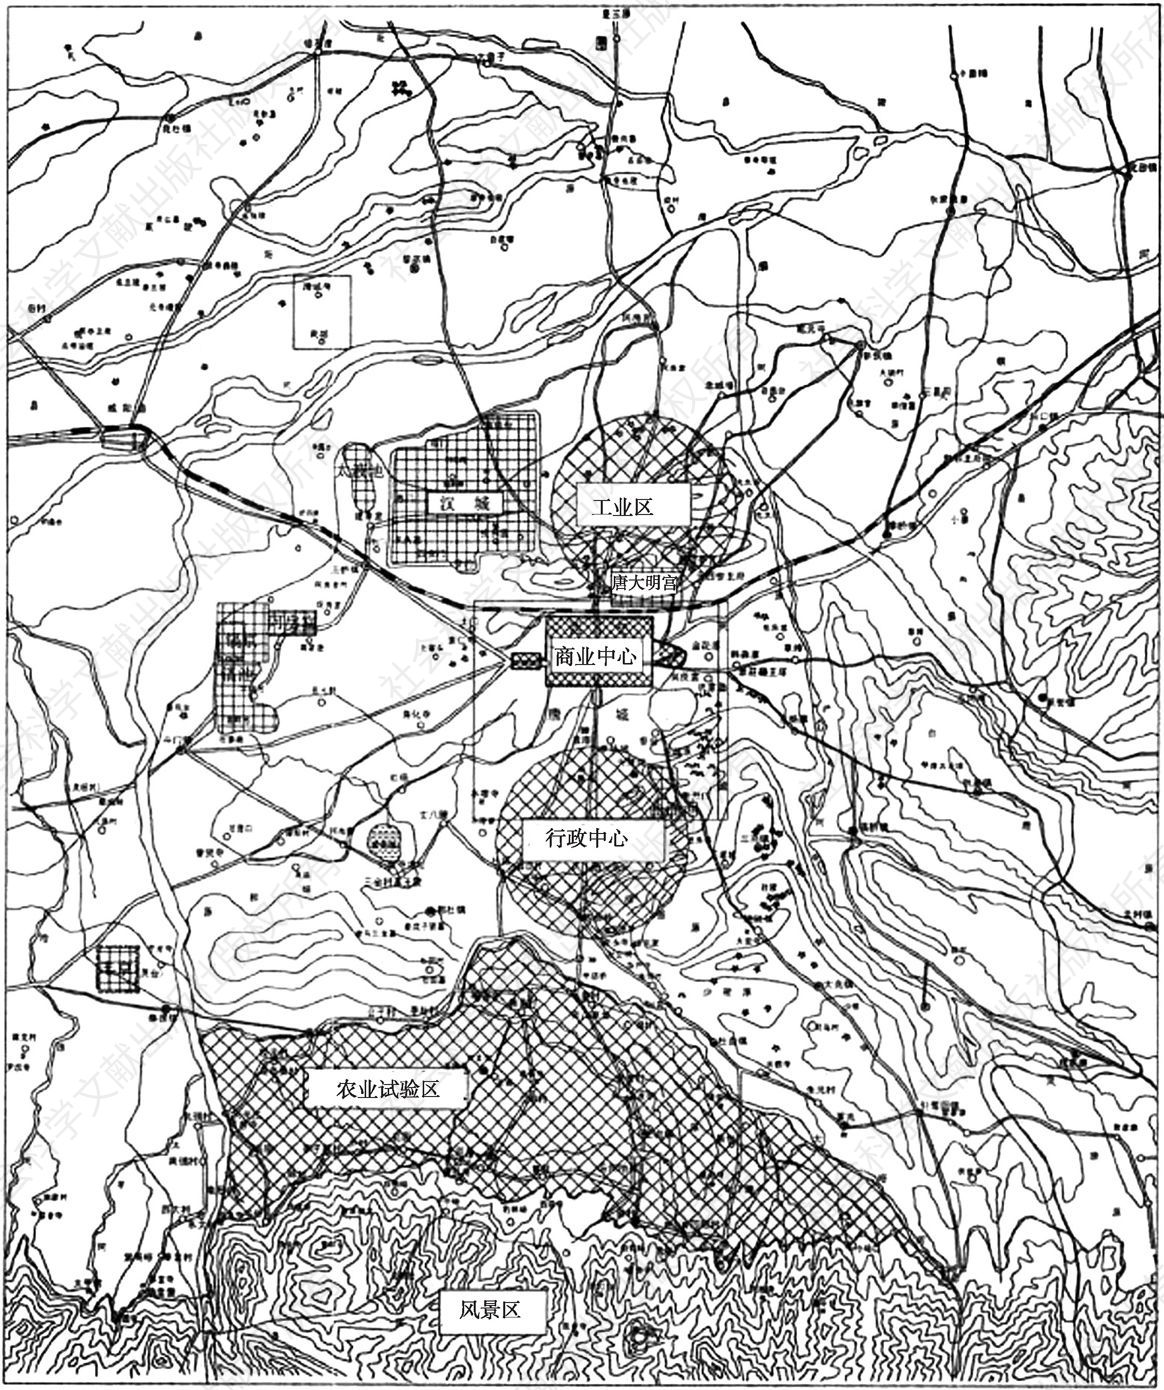 图6-2 《西京市分区计划说明》功能区分布